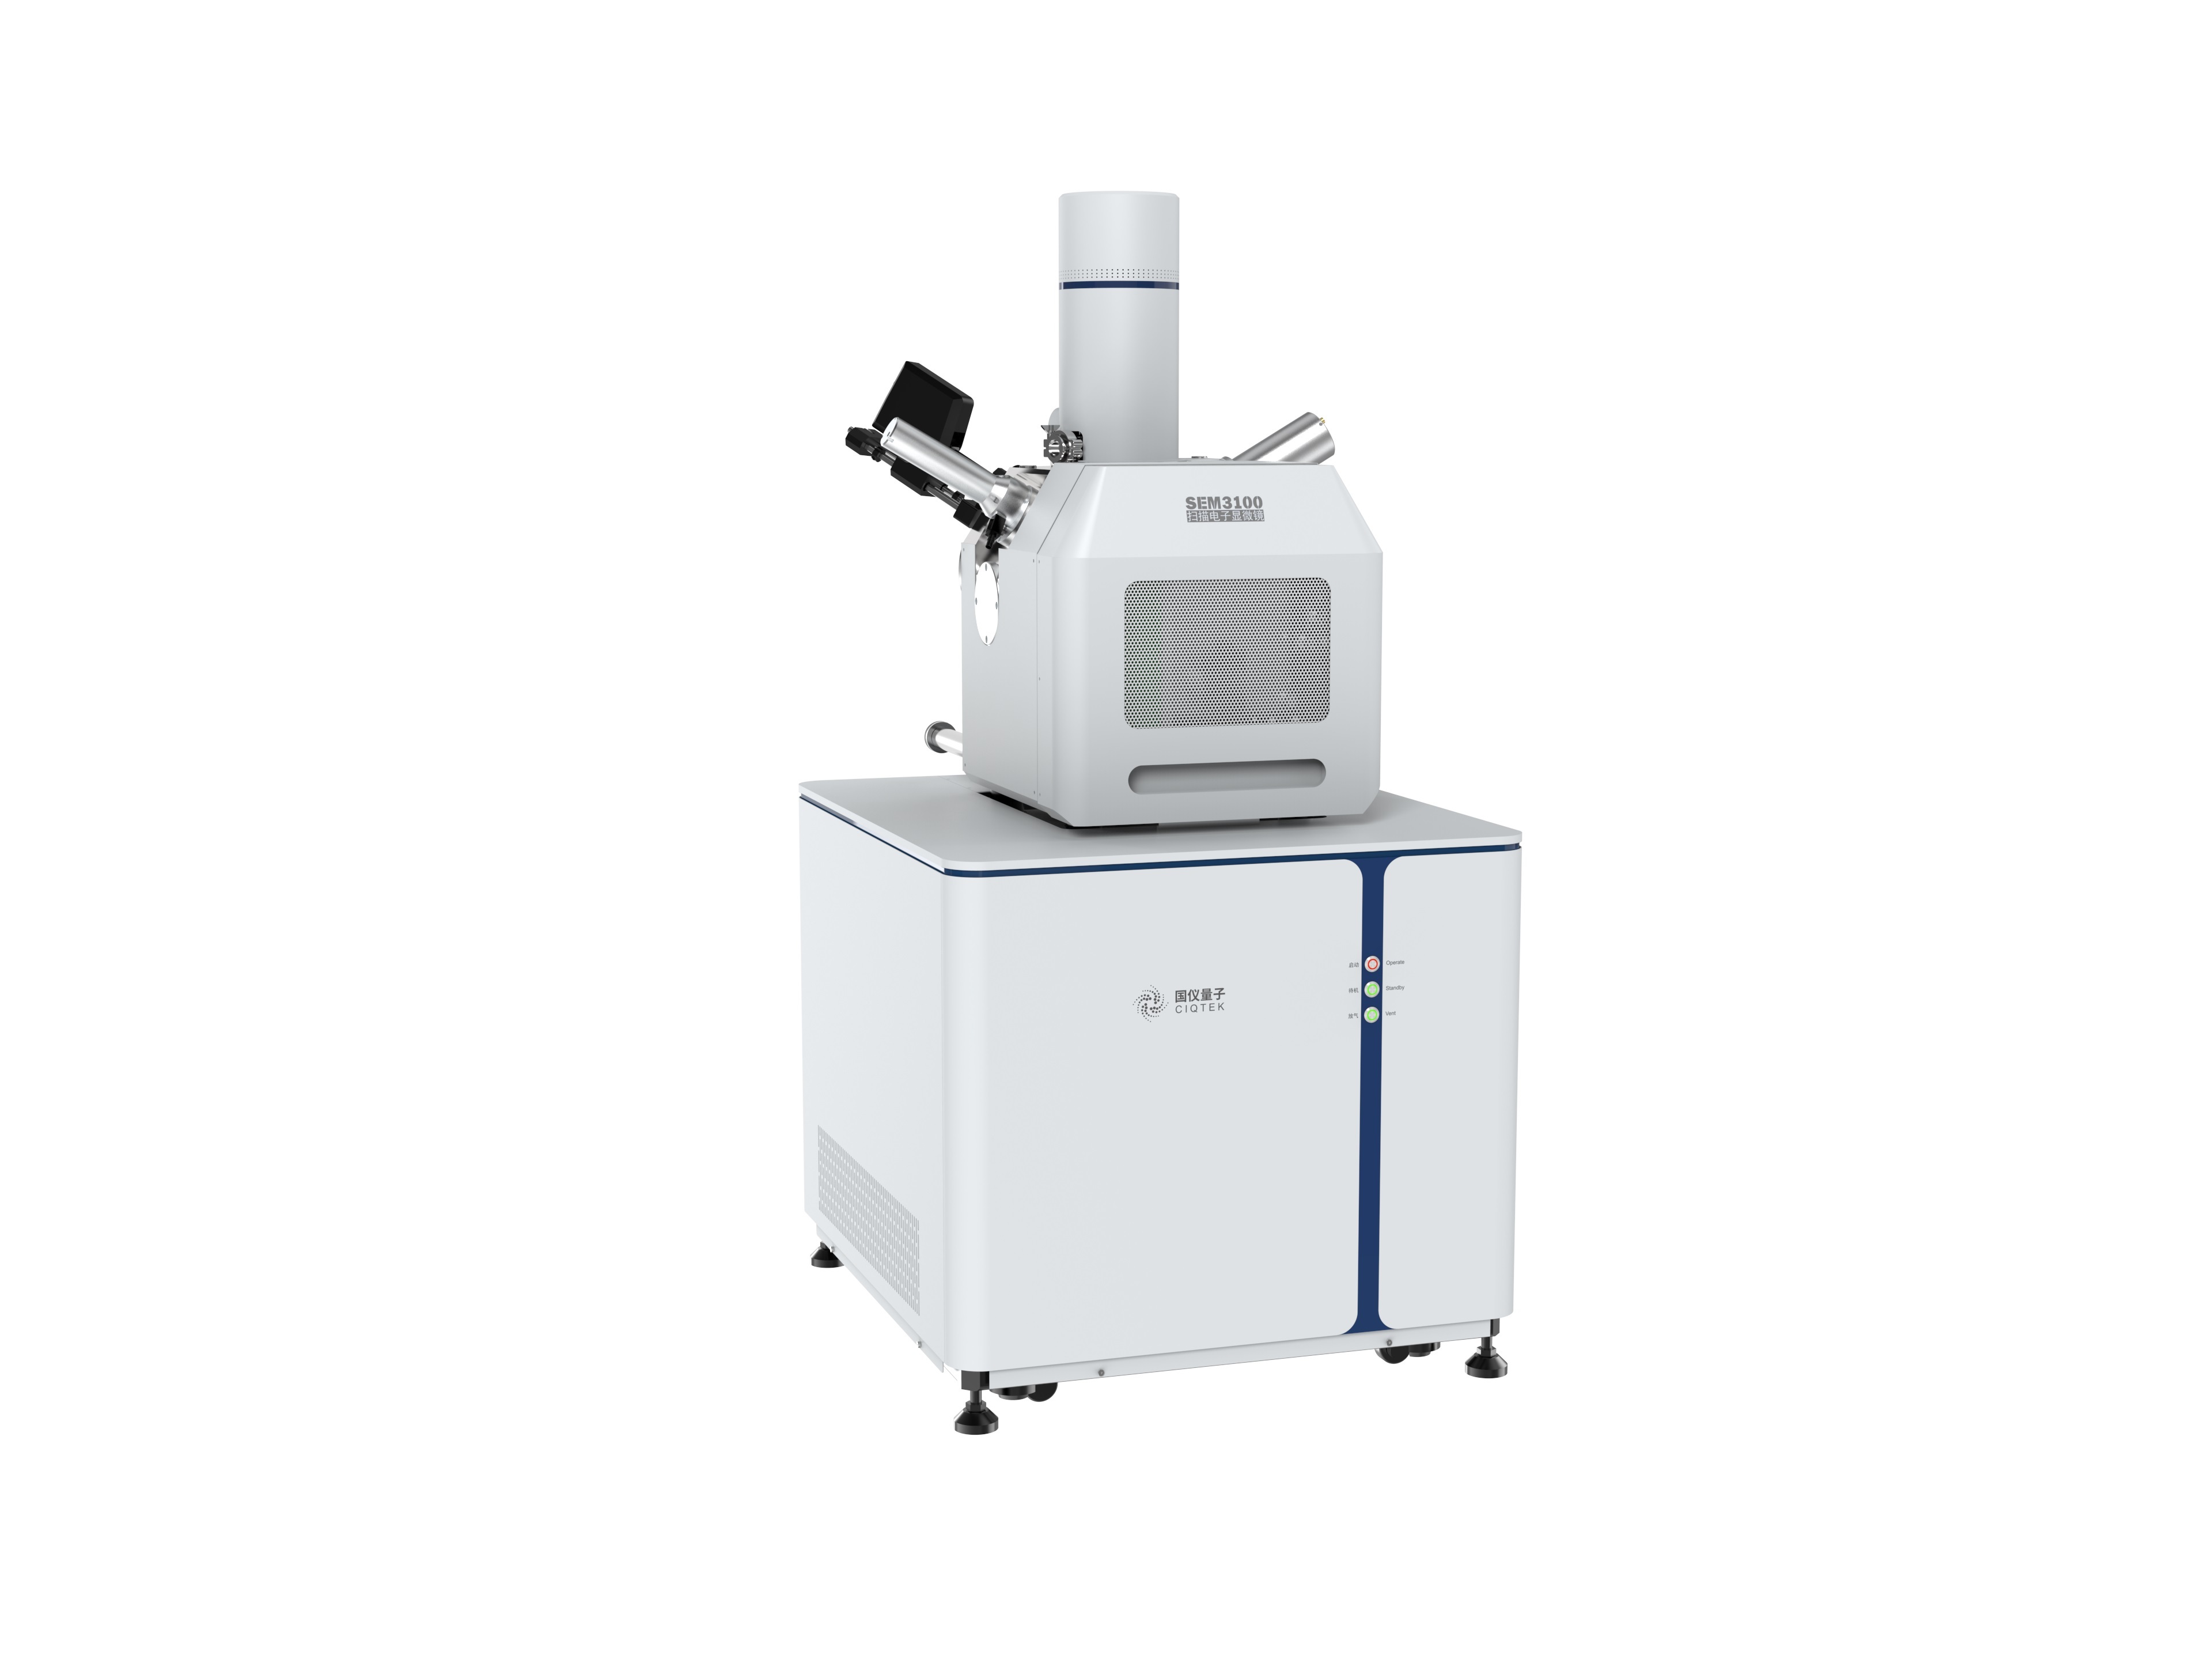 国仪量子扫描电子显微镜SEM3100